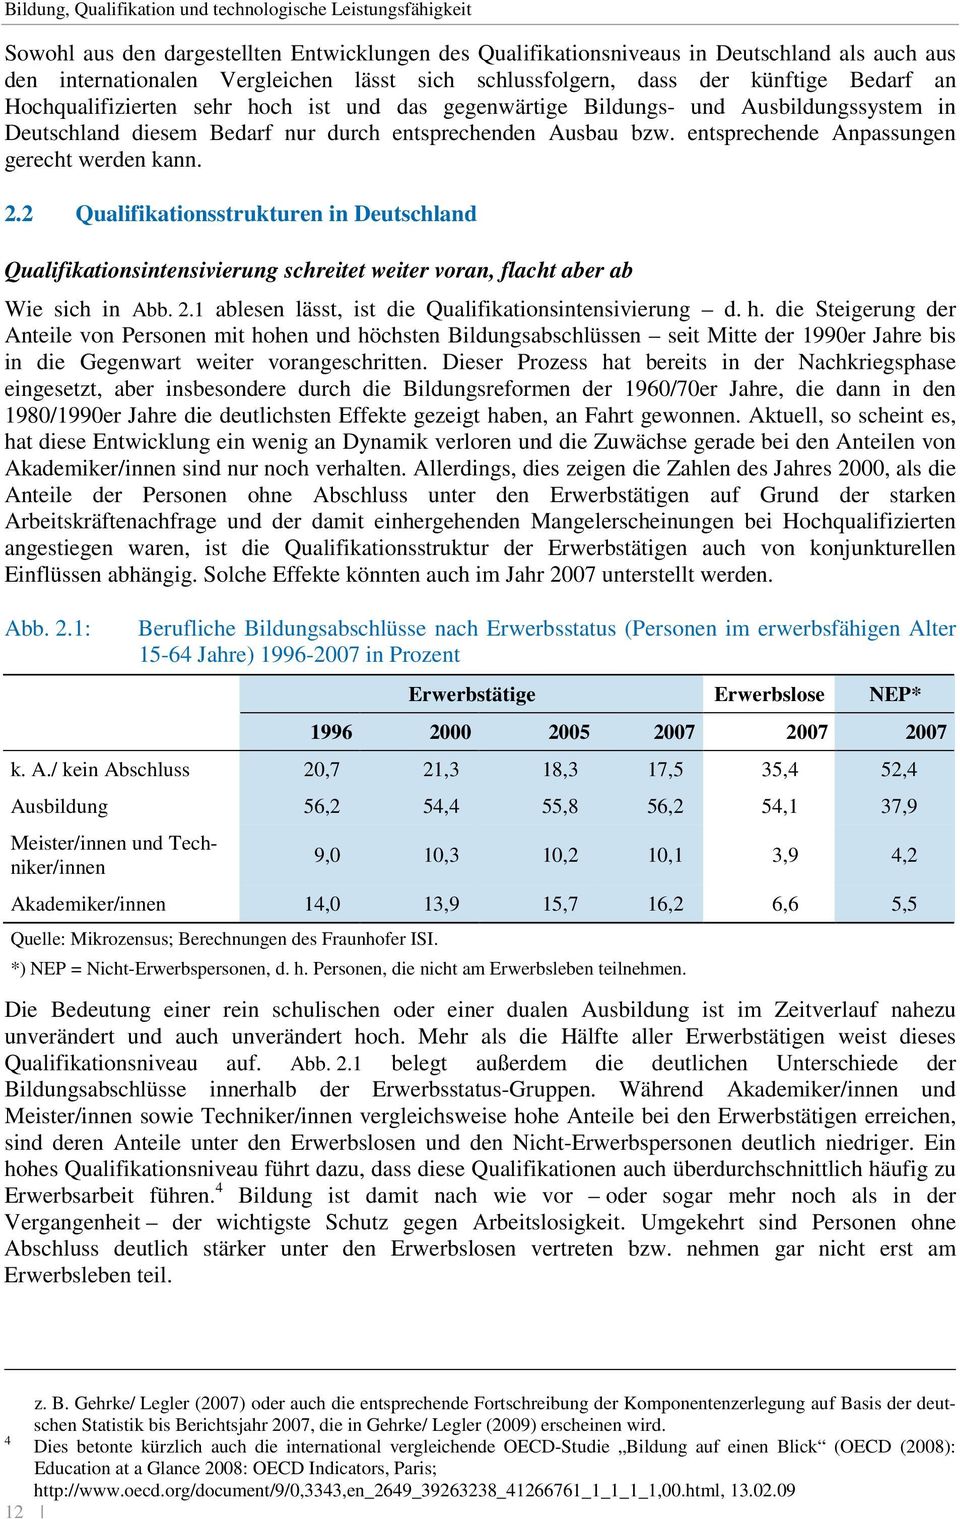 entsprechende Anpassungen gerecht werden kann. 2.2 Qualifikationsstrukturen in Deutschland Qualifikationsintensivierung schreitet weiter voran, flacht aber ab Wie sich in Abb. 2.1 ablesen lässt, ist die Qualifikationsintensivierung d.